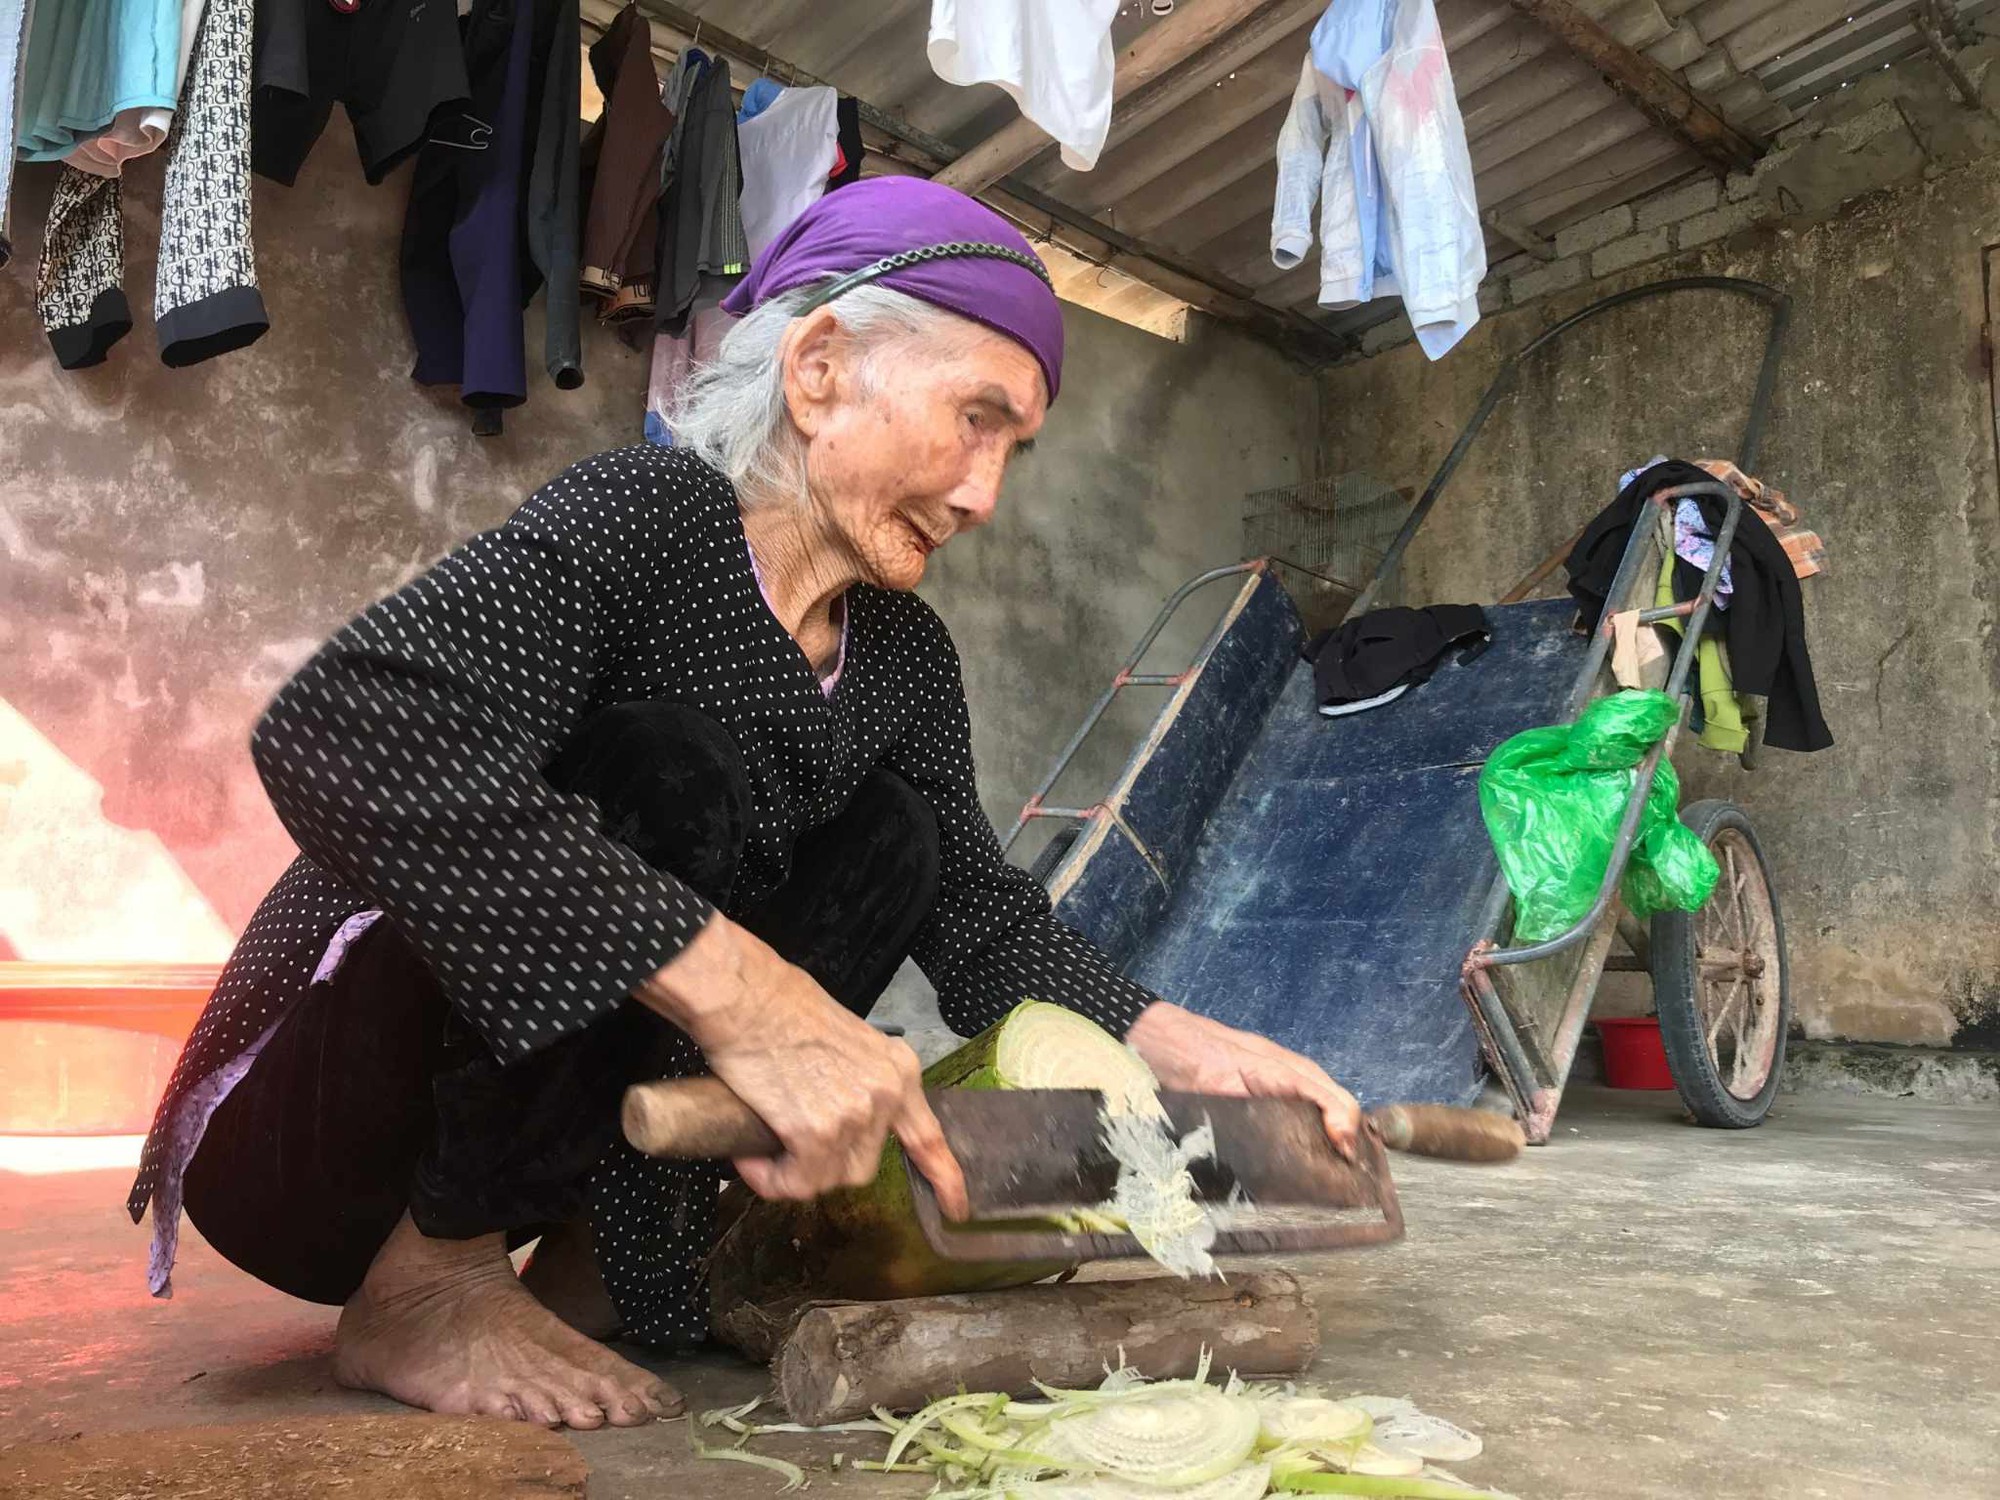 Đầu năm mới về thăm &quot;làng trường thọ&quot;, gặp cụ bà 105 tuổi vẫn khỏe mạnh minh mẫn, chăm làm việc nhà- Ảnh 1.